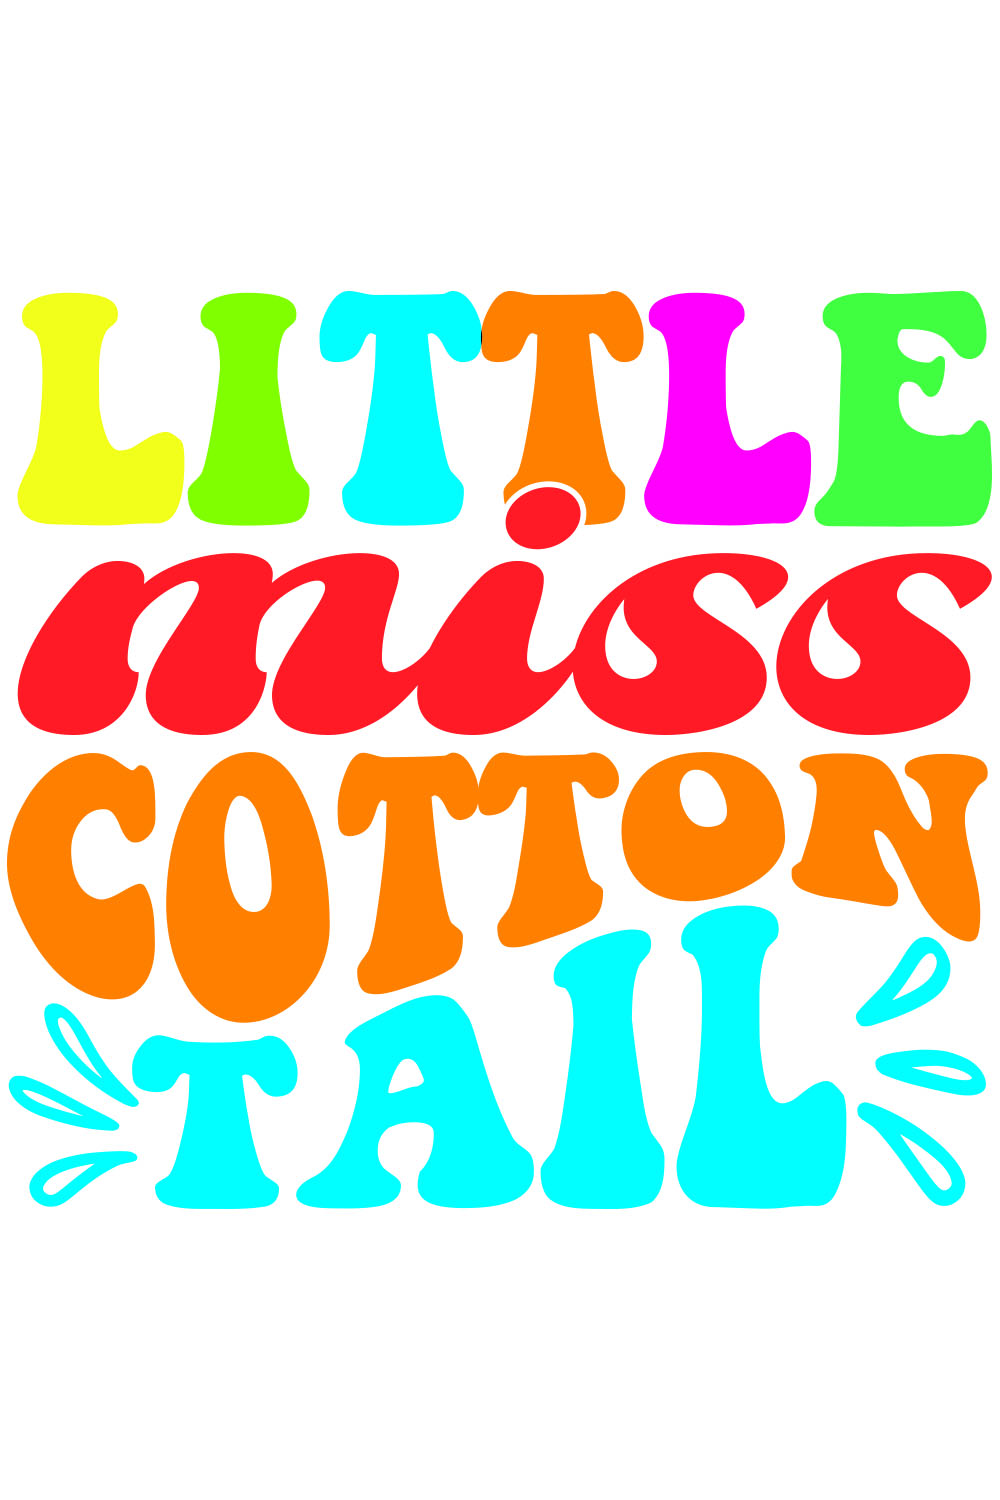 Little miss cotton tail Retro T-Shirt Designs pinterest preview image.